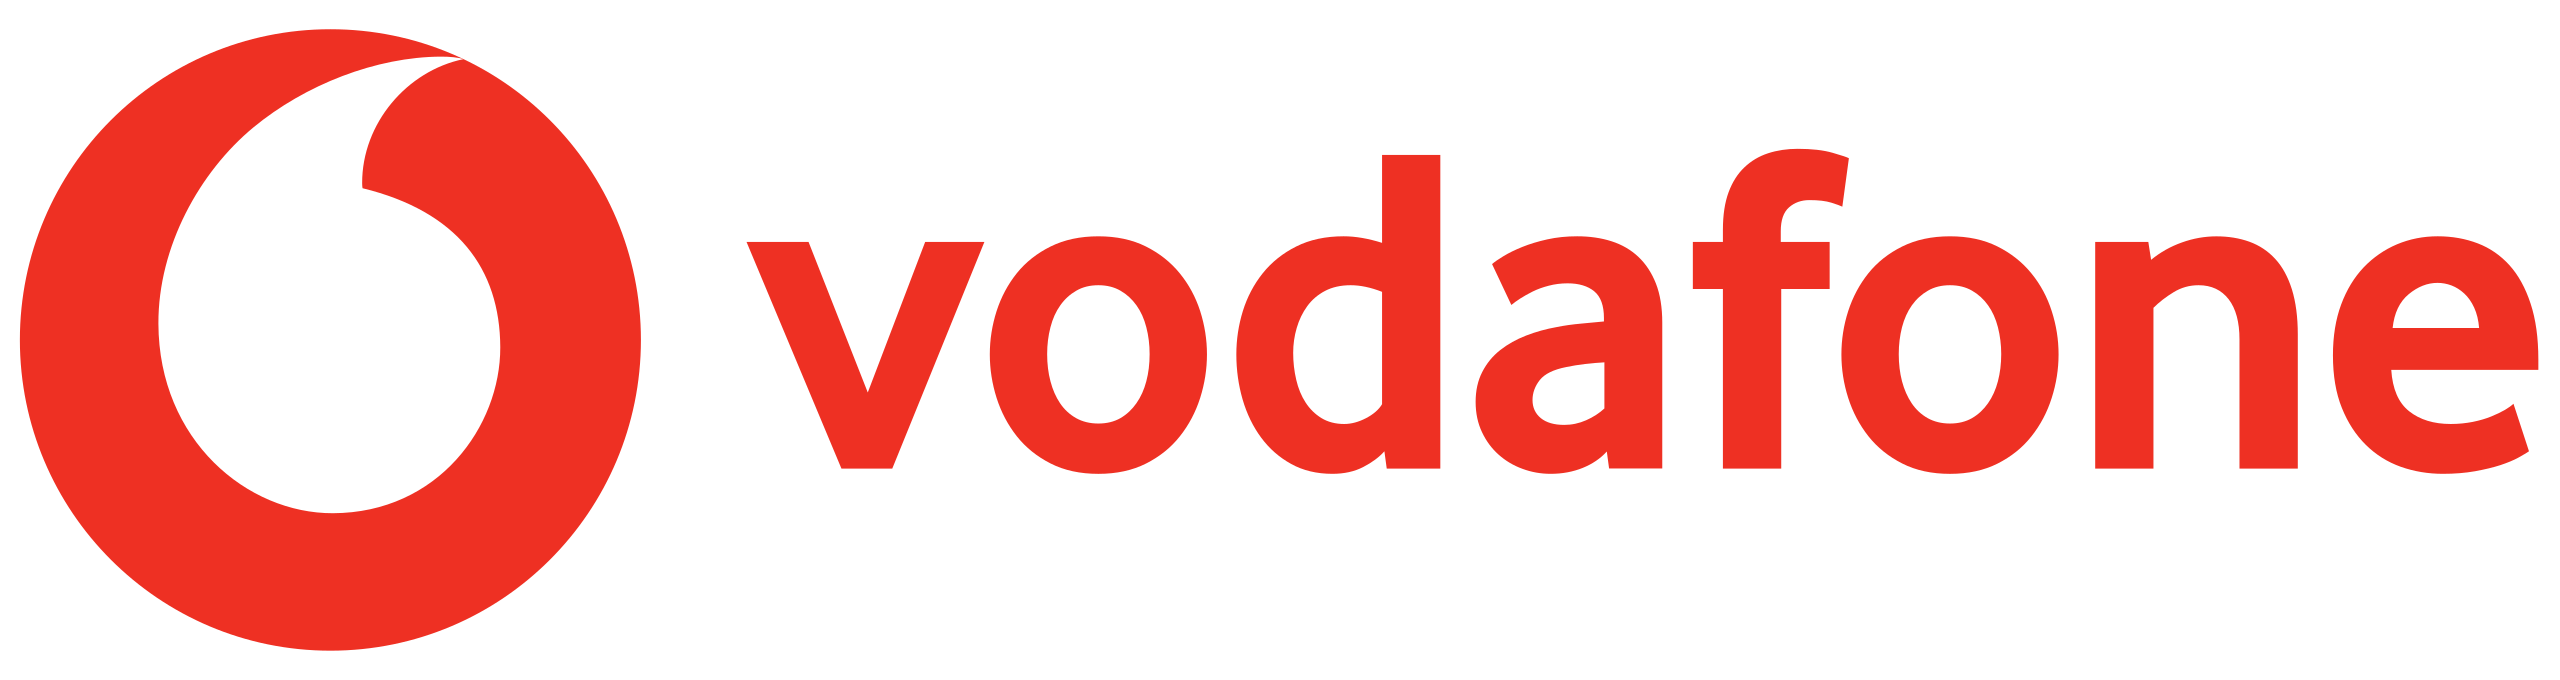 Vodafone | EAG Geri Dönüşüm